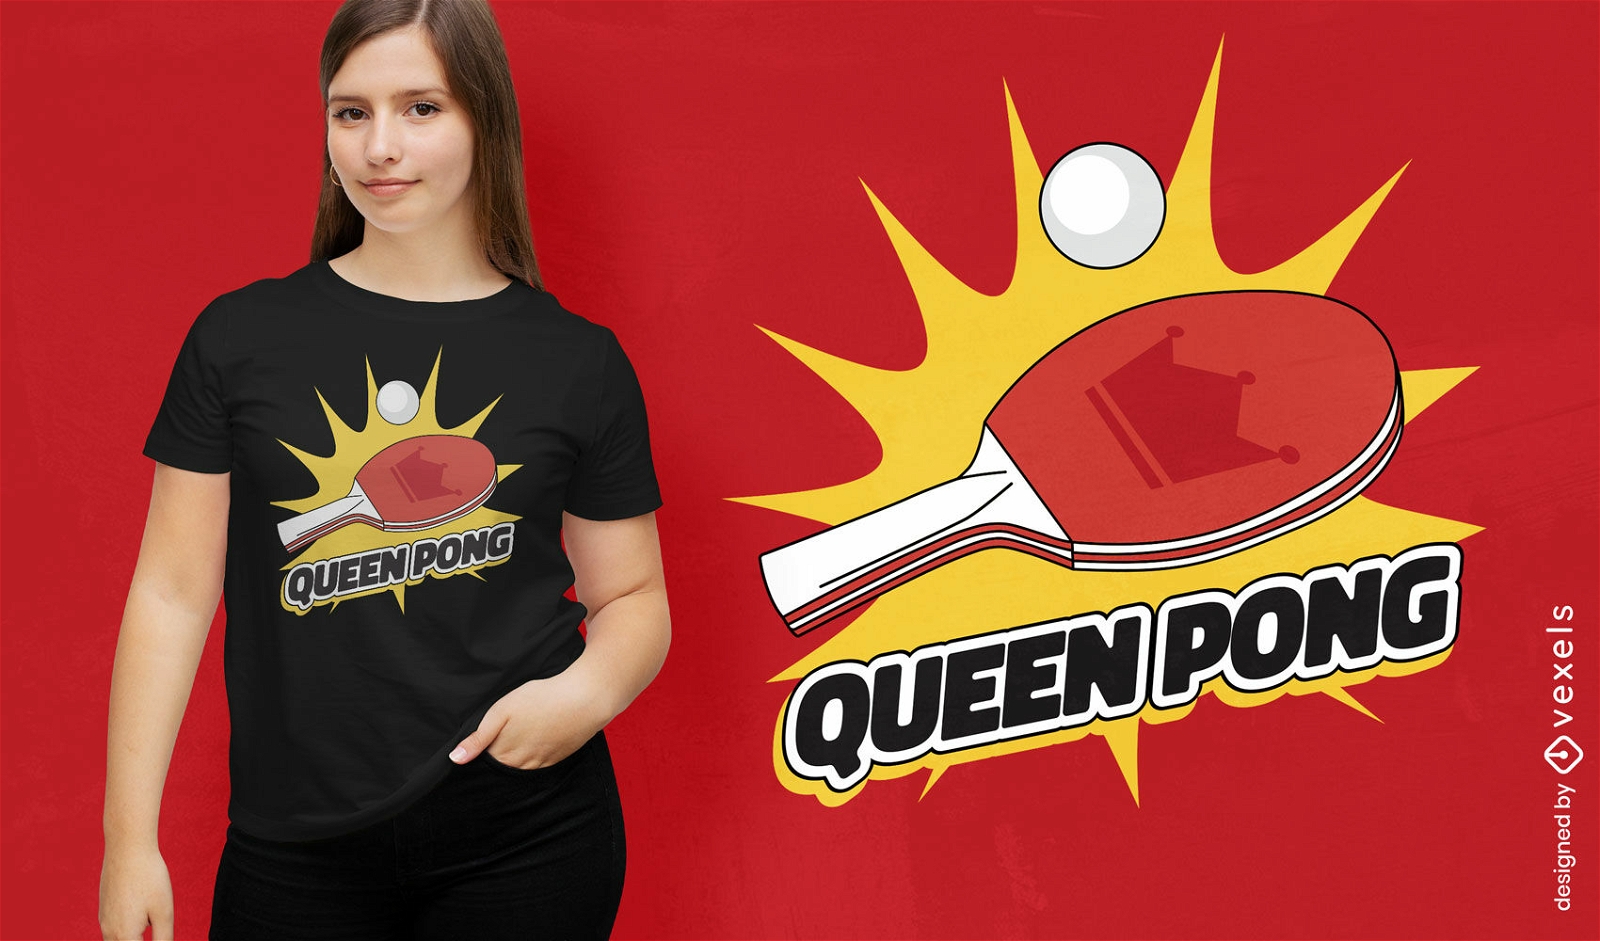 Ping pong queen t-shirt design